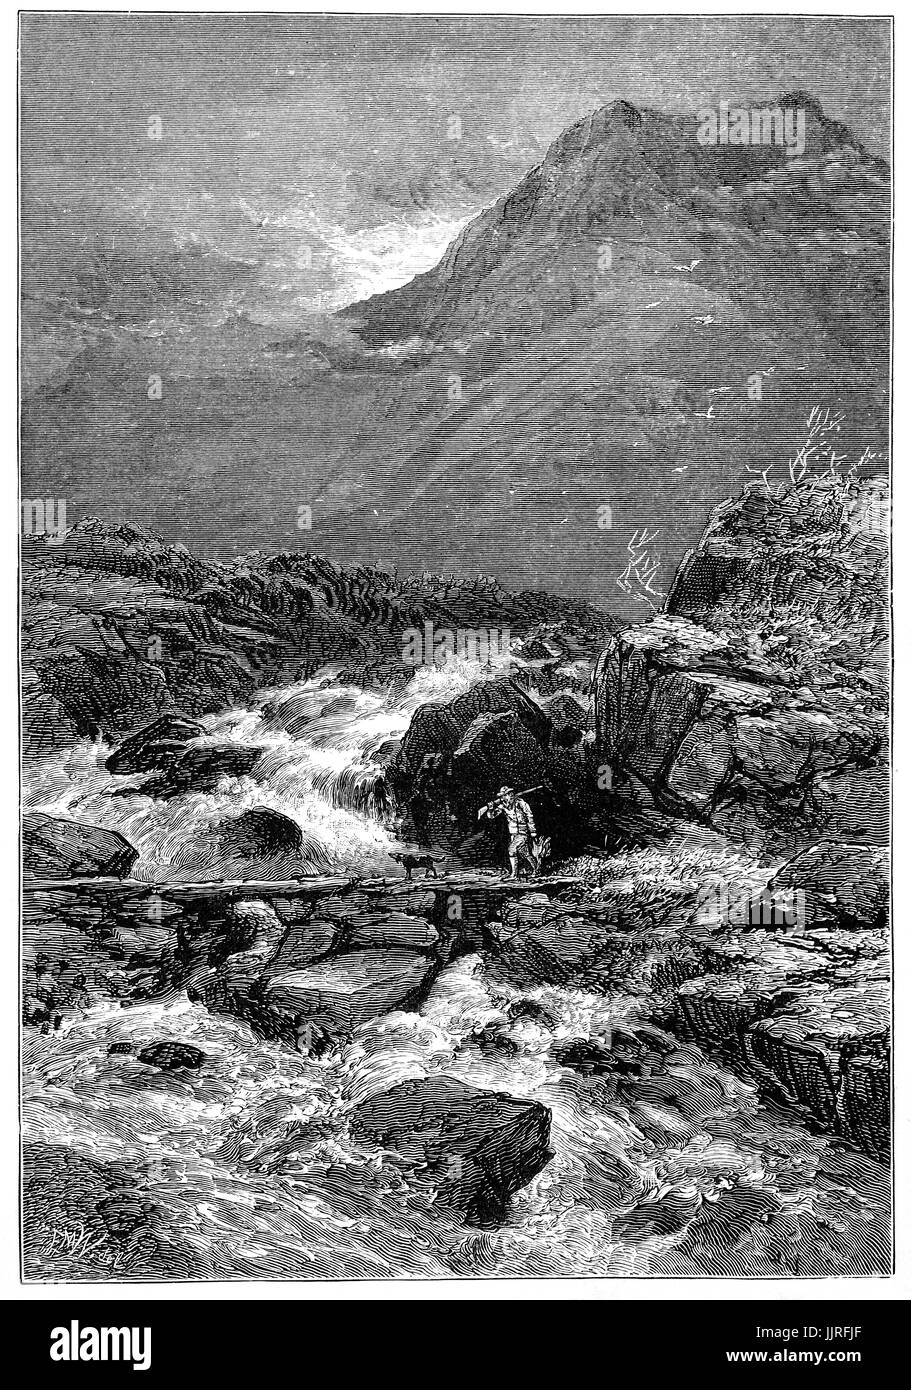 1870 : le chemin du retour après la chasse, un homme et son chien traversent la vapeur de Llyn Idwal, un petit lac dans les MCG Idwal dans les montagnes de Snowdonia, Glyderau Gwynydd, au nord du Pays de Galles. Banque D'Images